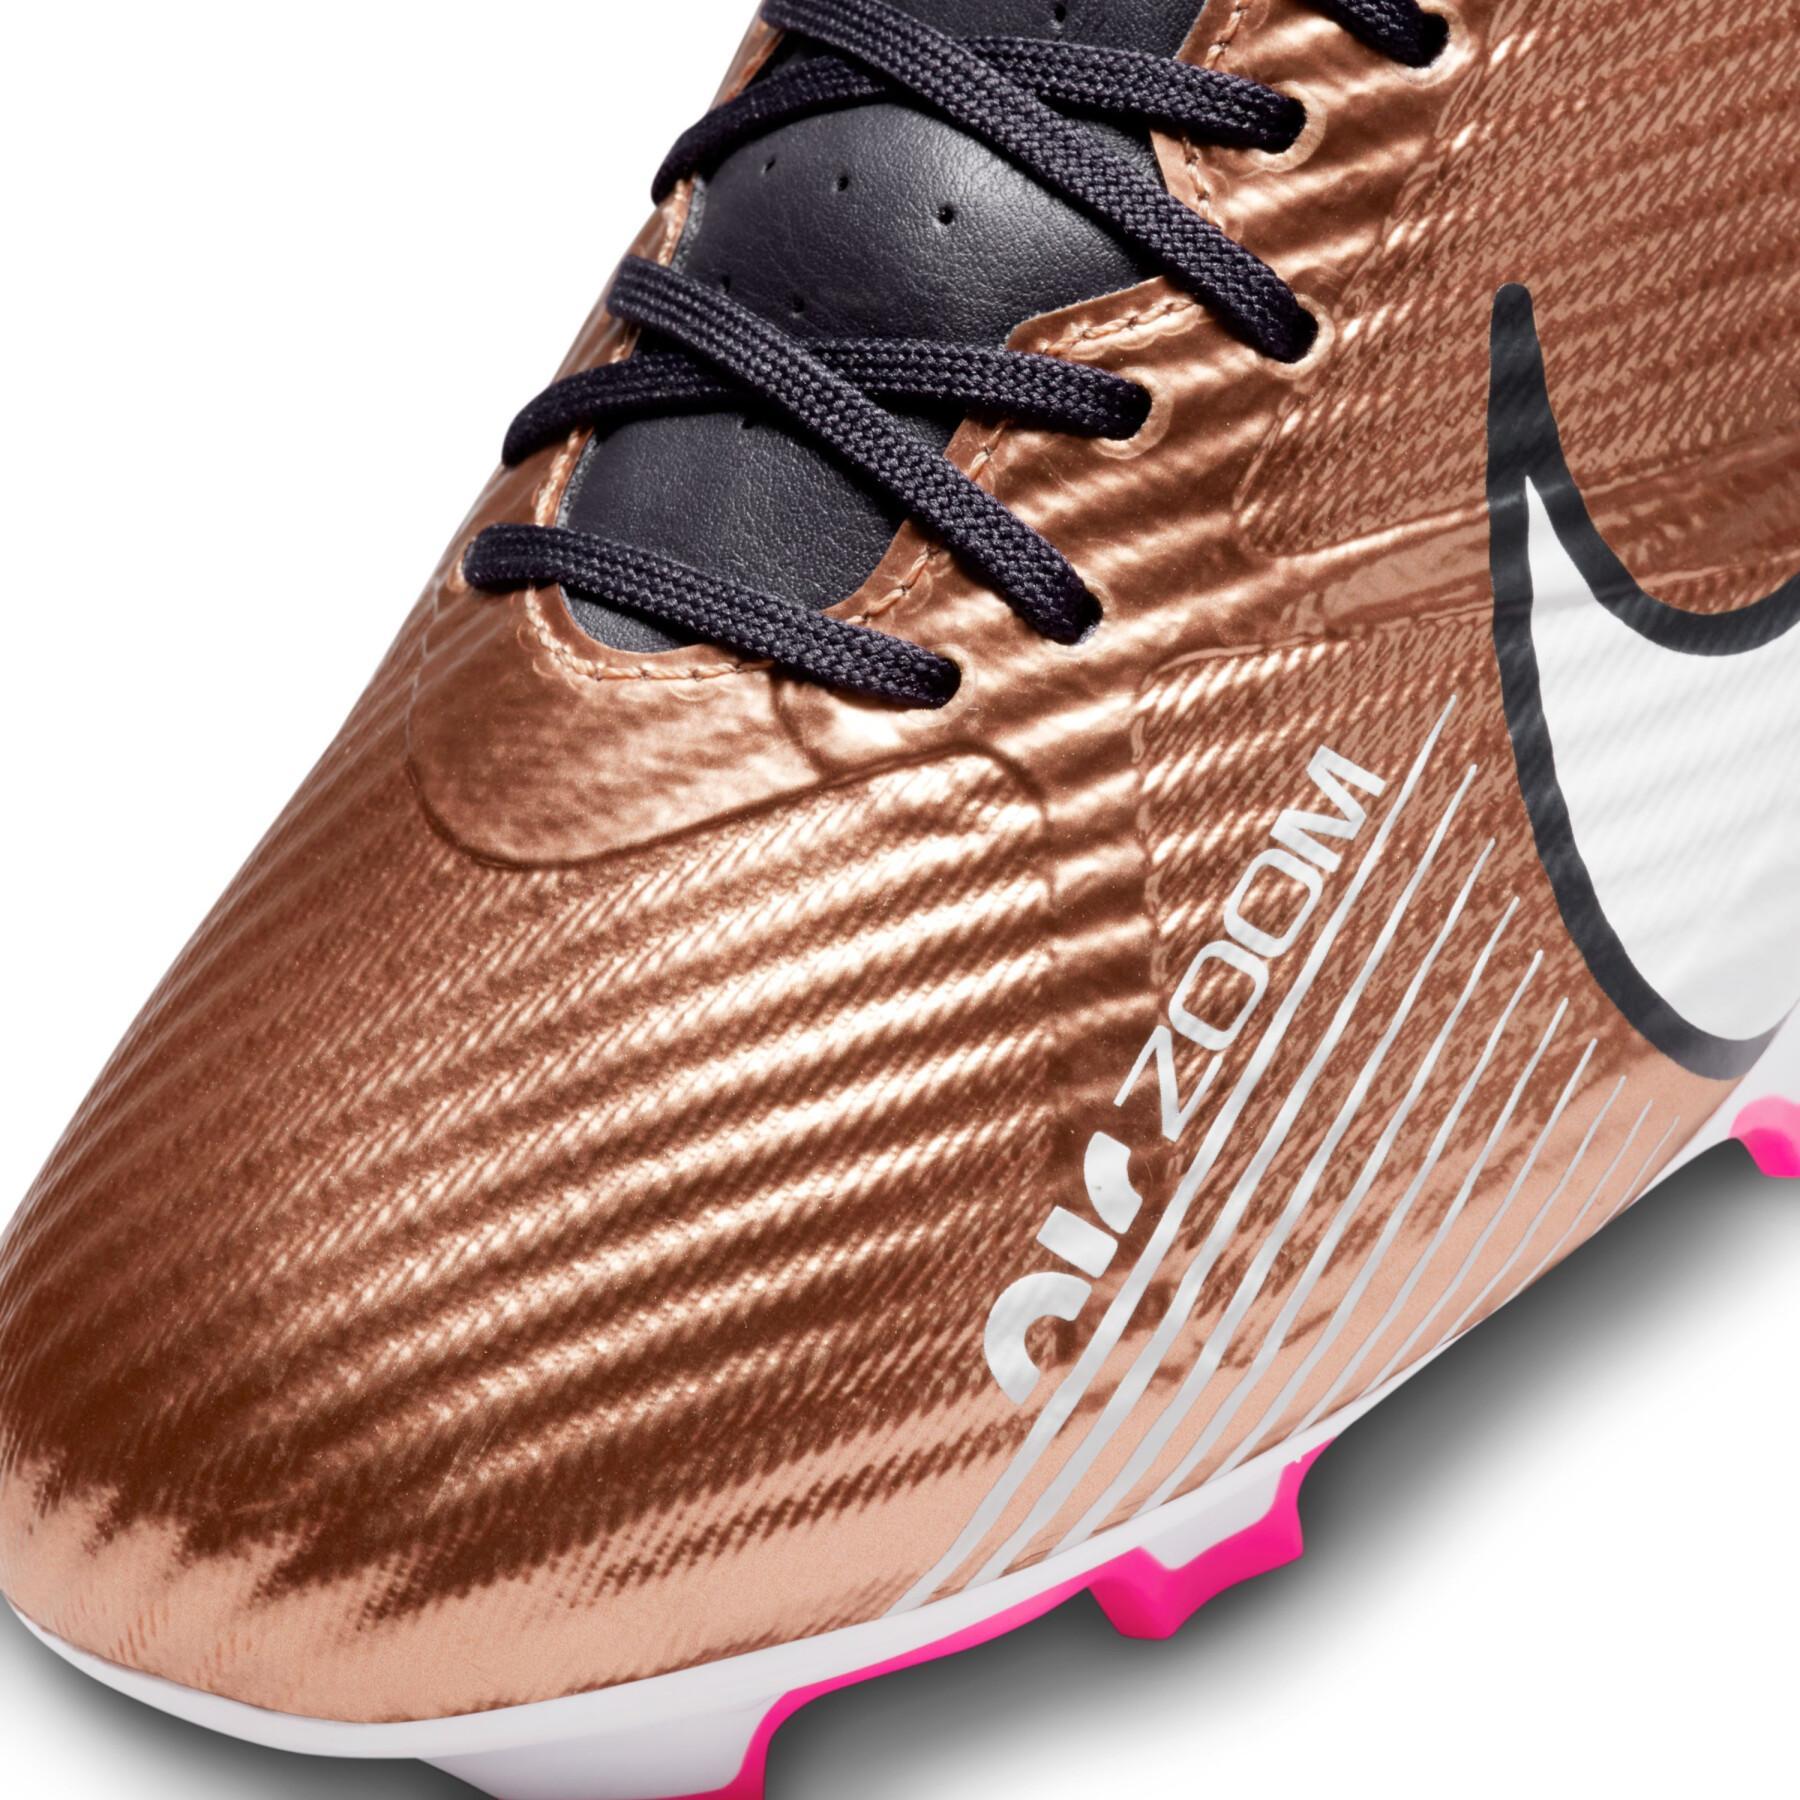 Sapatos de futebol Nike Zoom Mercurial Vapor 15 Academy Qatar FG/MG - Generation Pack